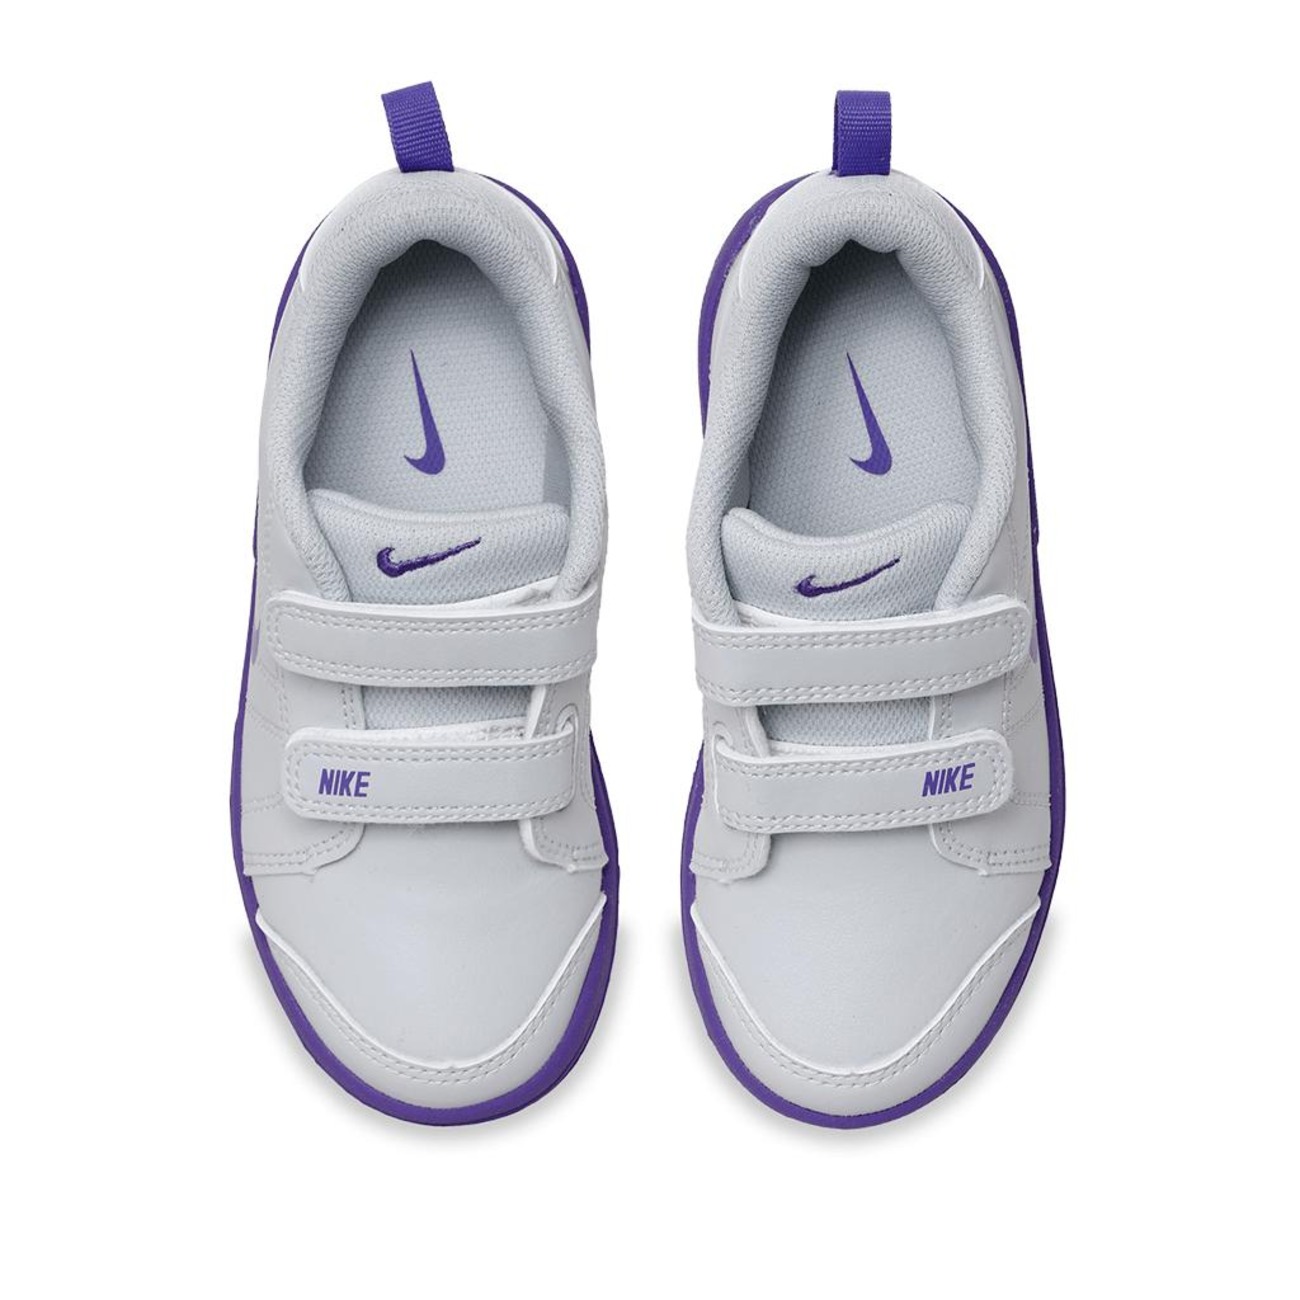 Tênis Nike Pico LT Infantil - Foto 4